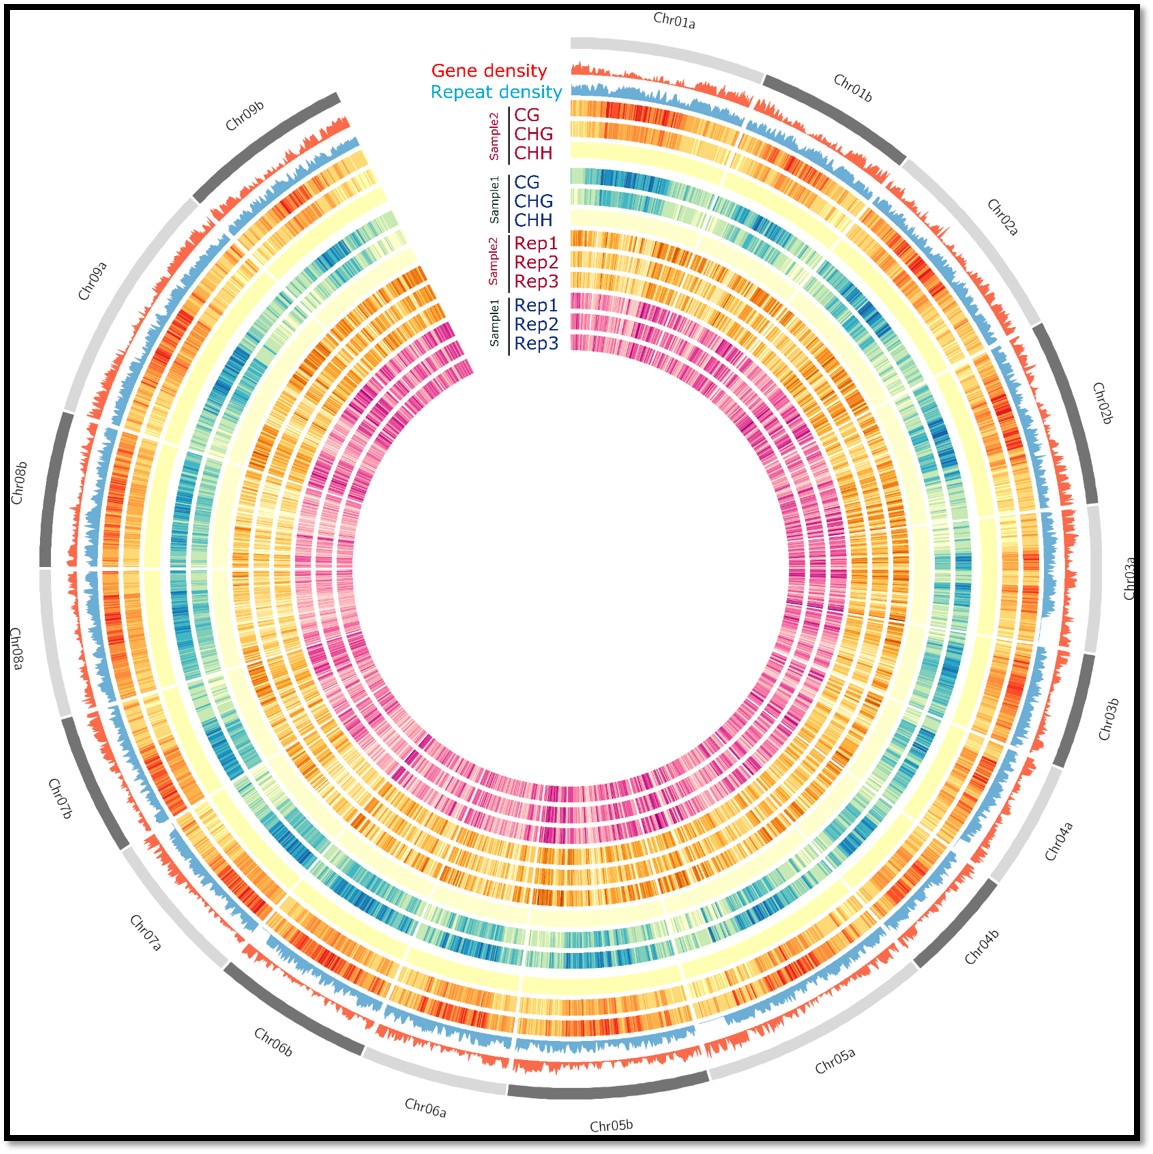 Circos plot of gene density, TE density, and DNA methylation across each chromosome